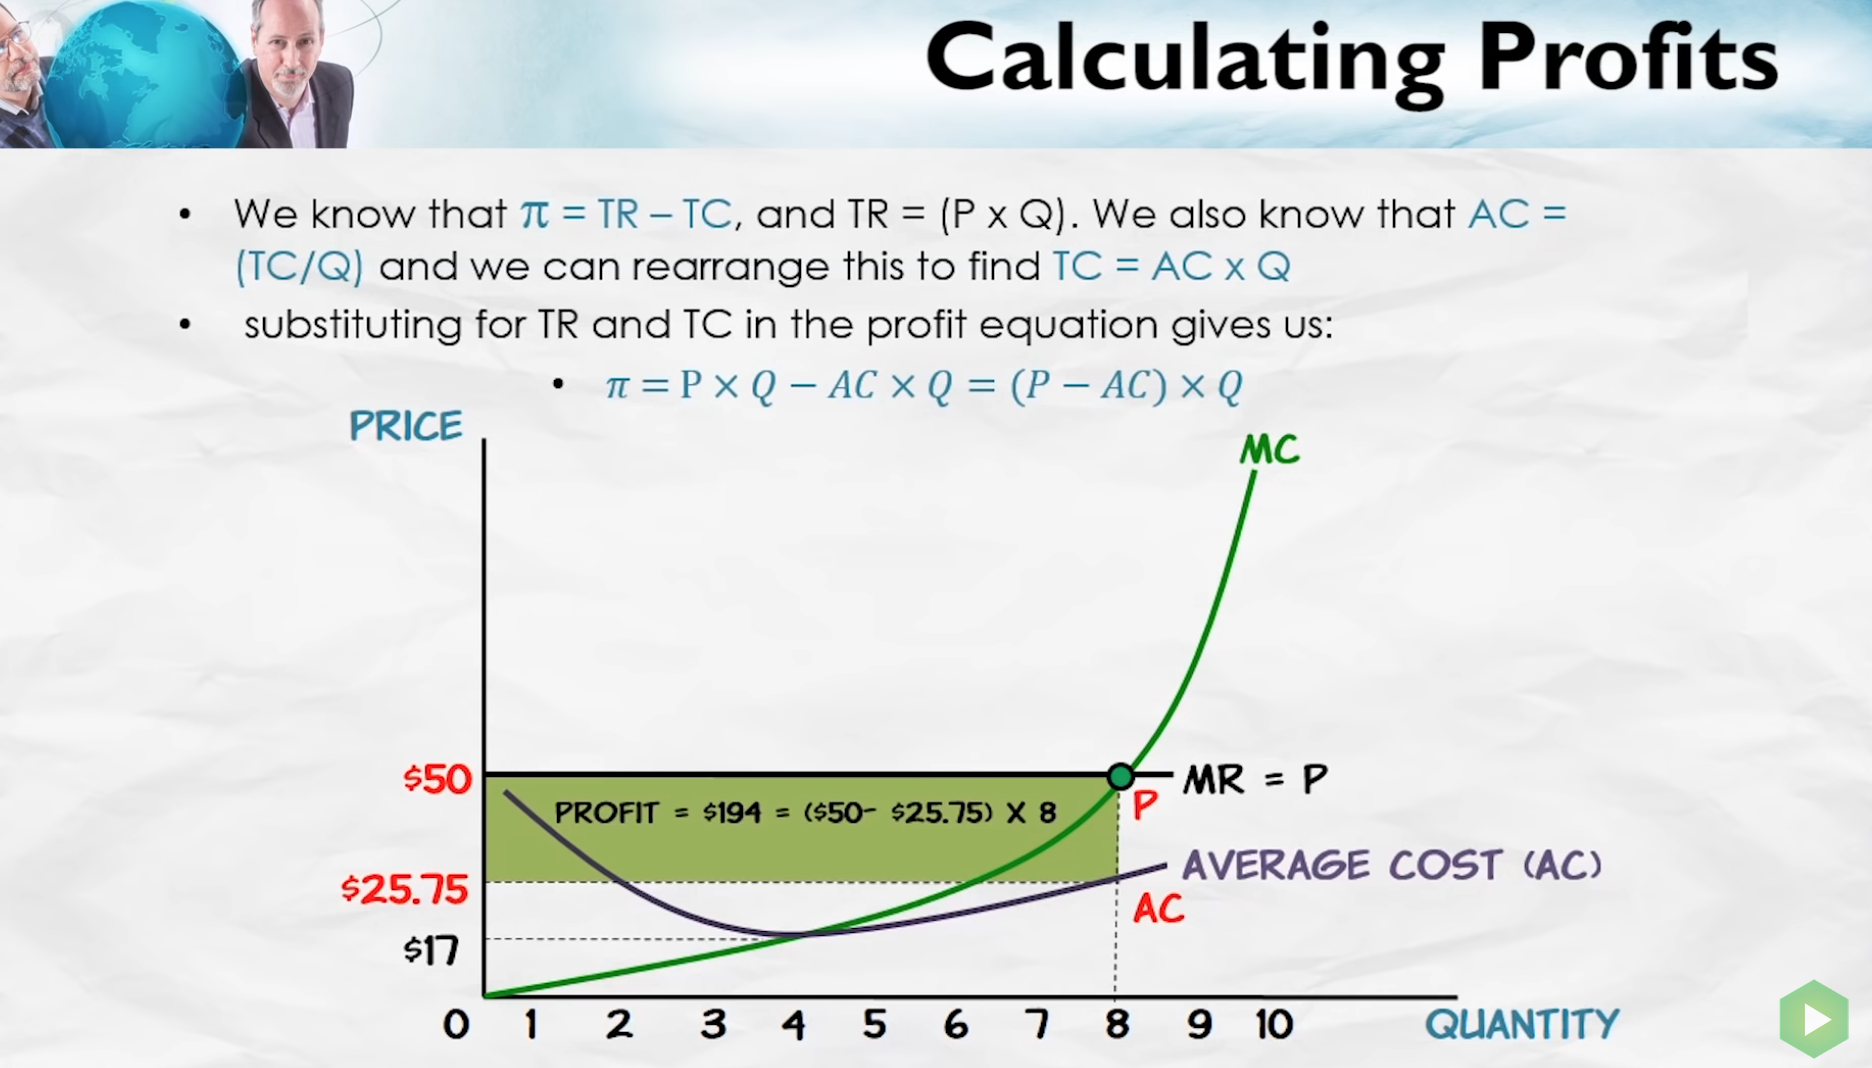 Calculating profits